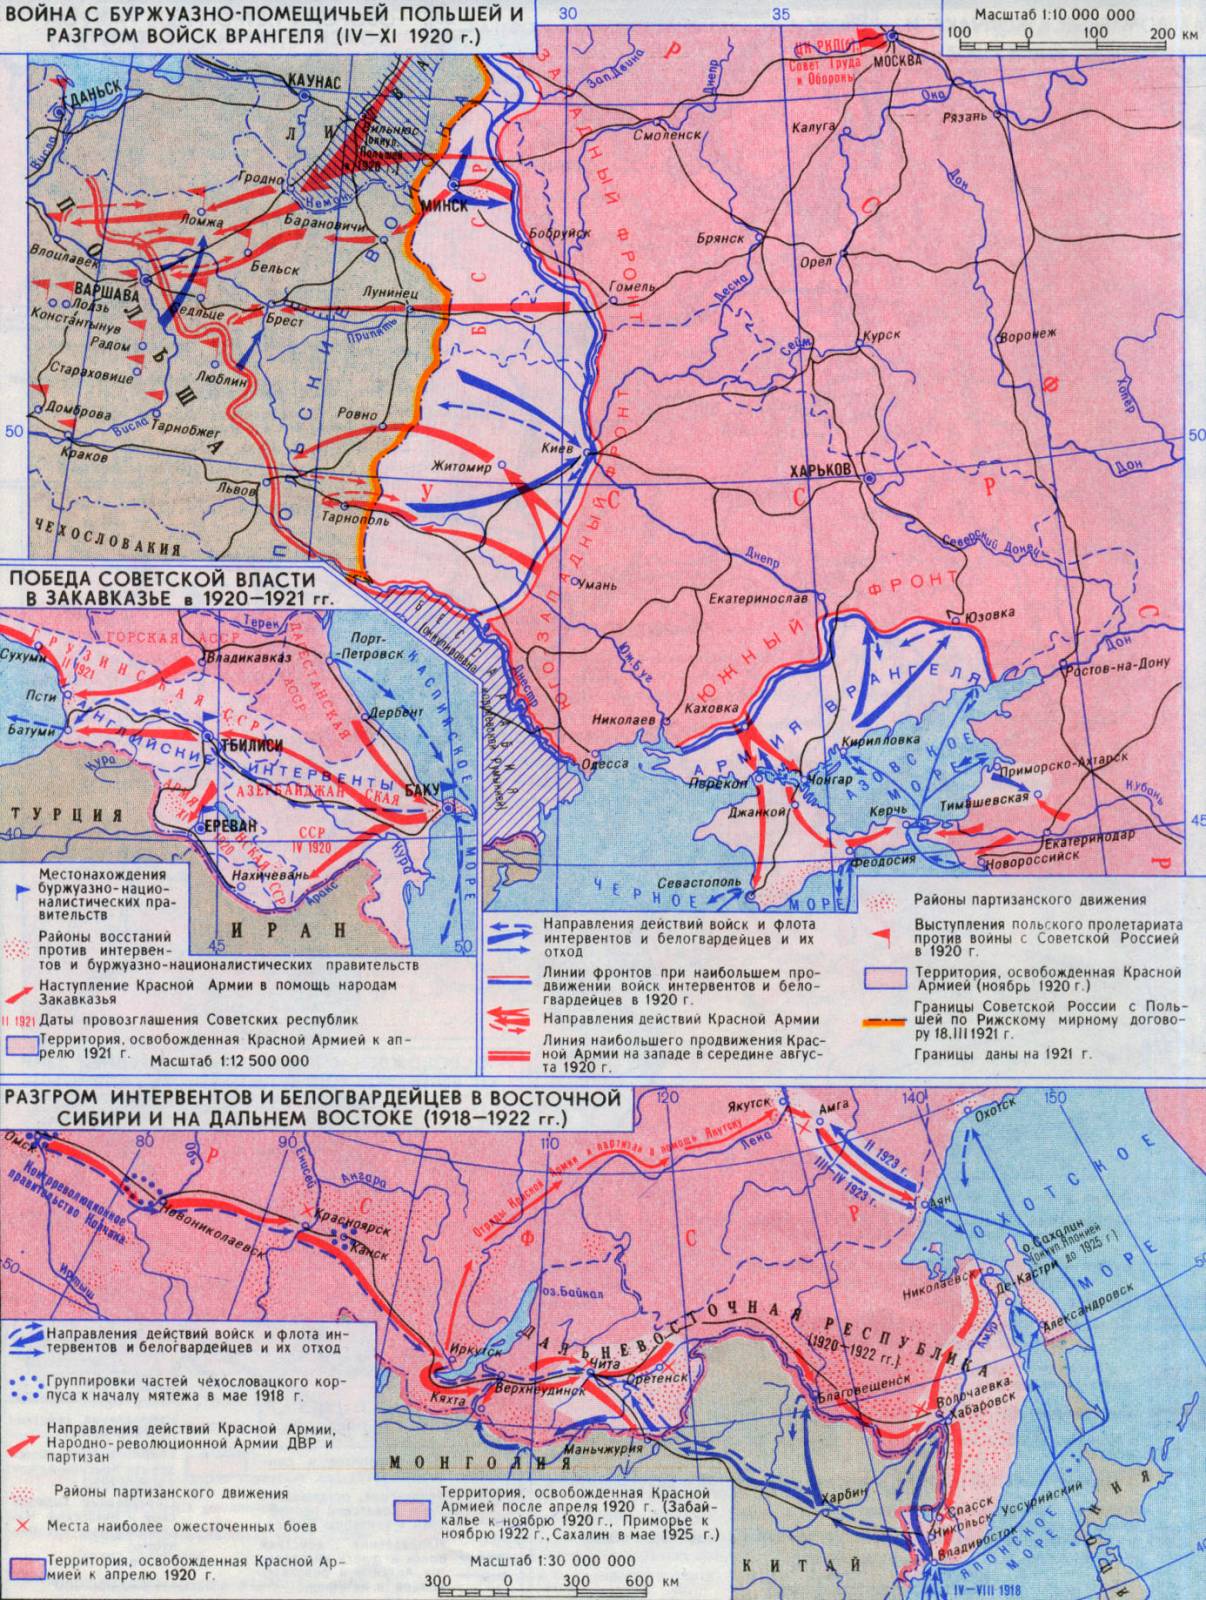 Разгром белых армий. Карта гражданской войны в России 1917-1922.